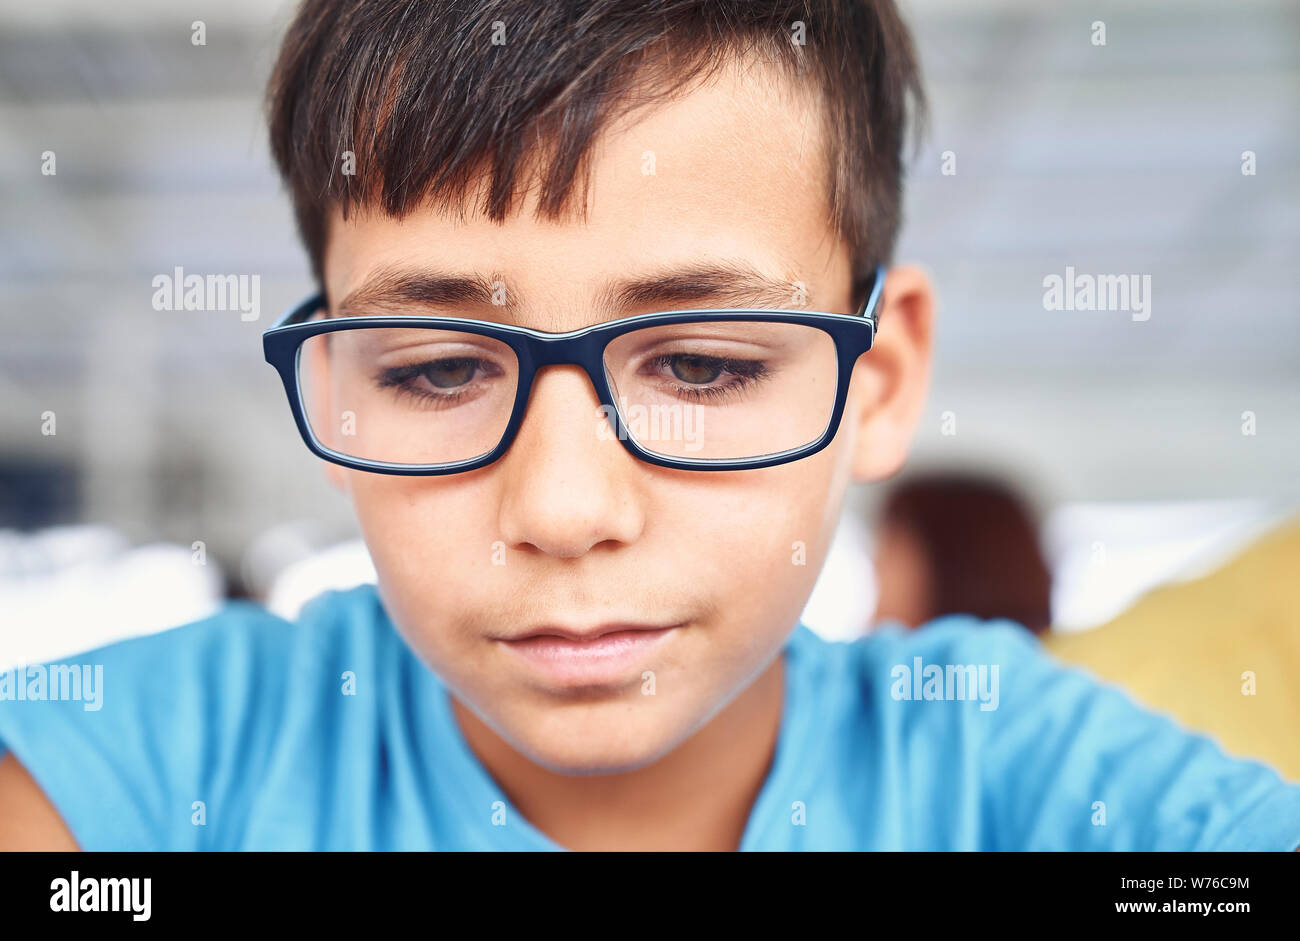 Gli occhi verdi ragazzo con gli occhiali Foto stock - Alamy